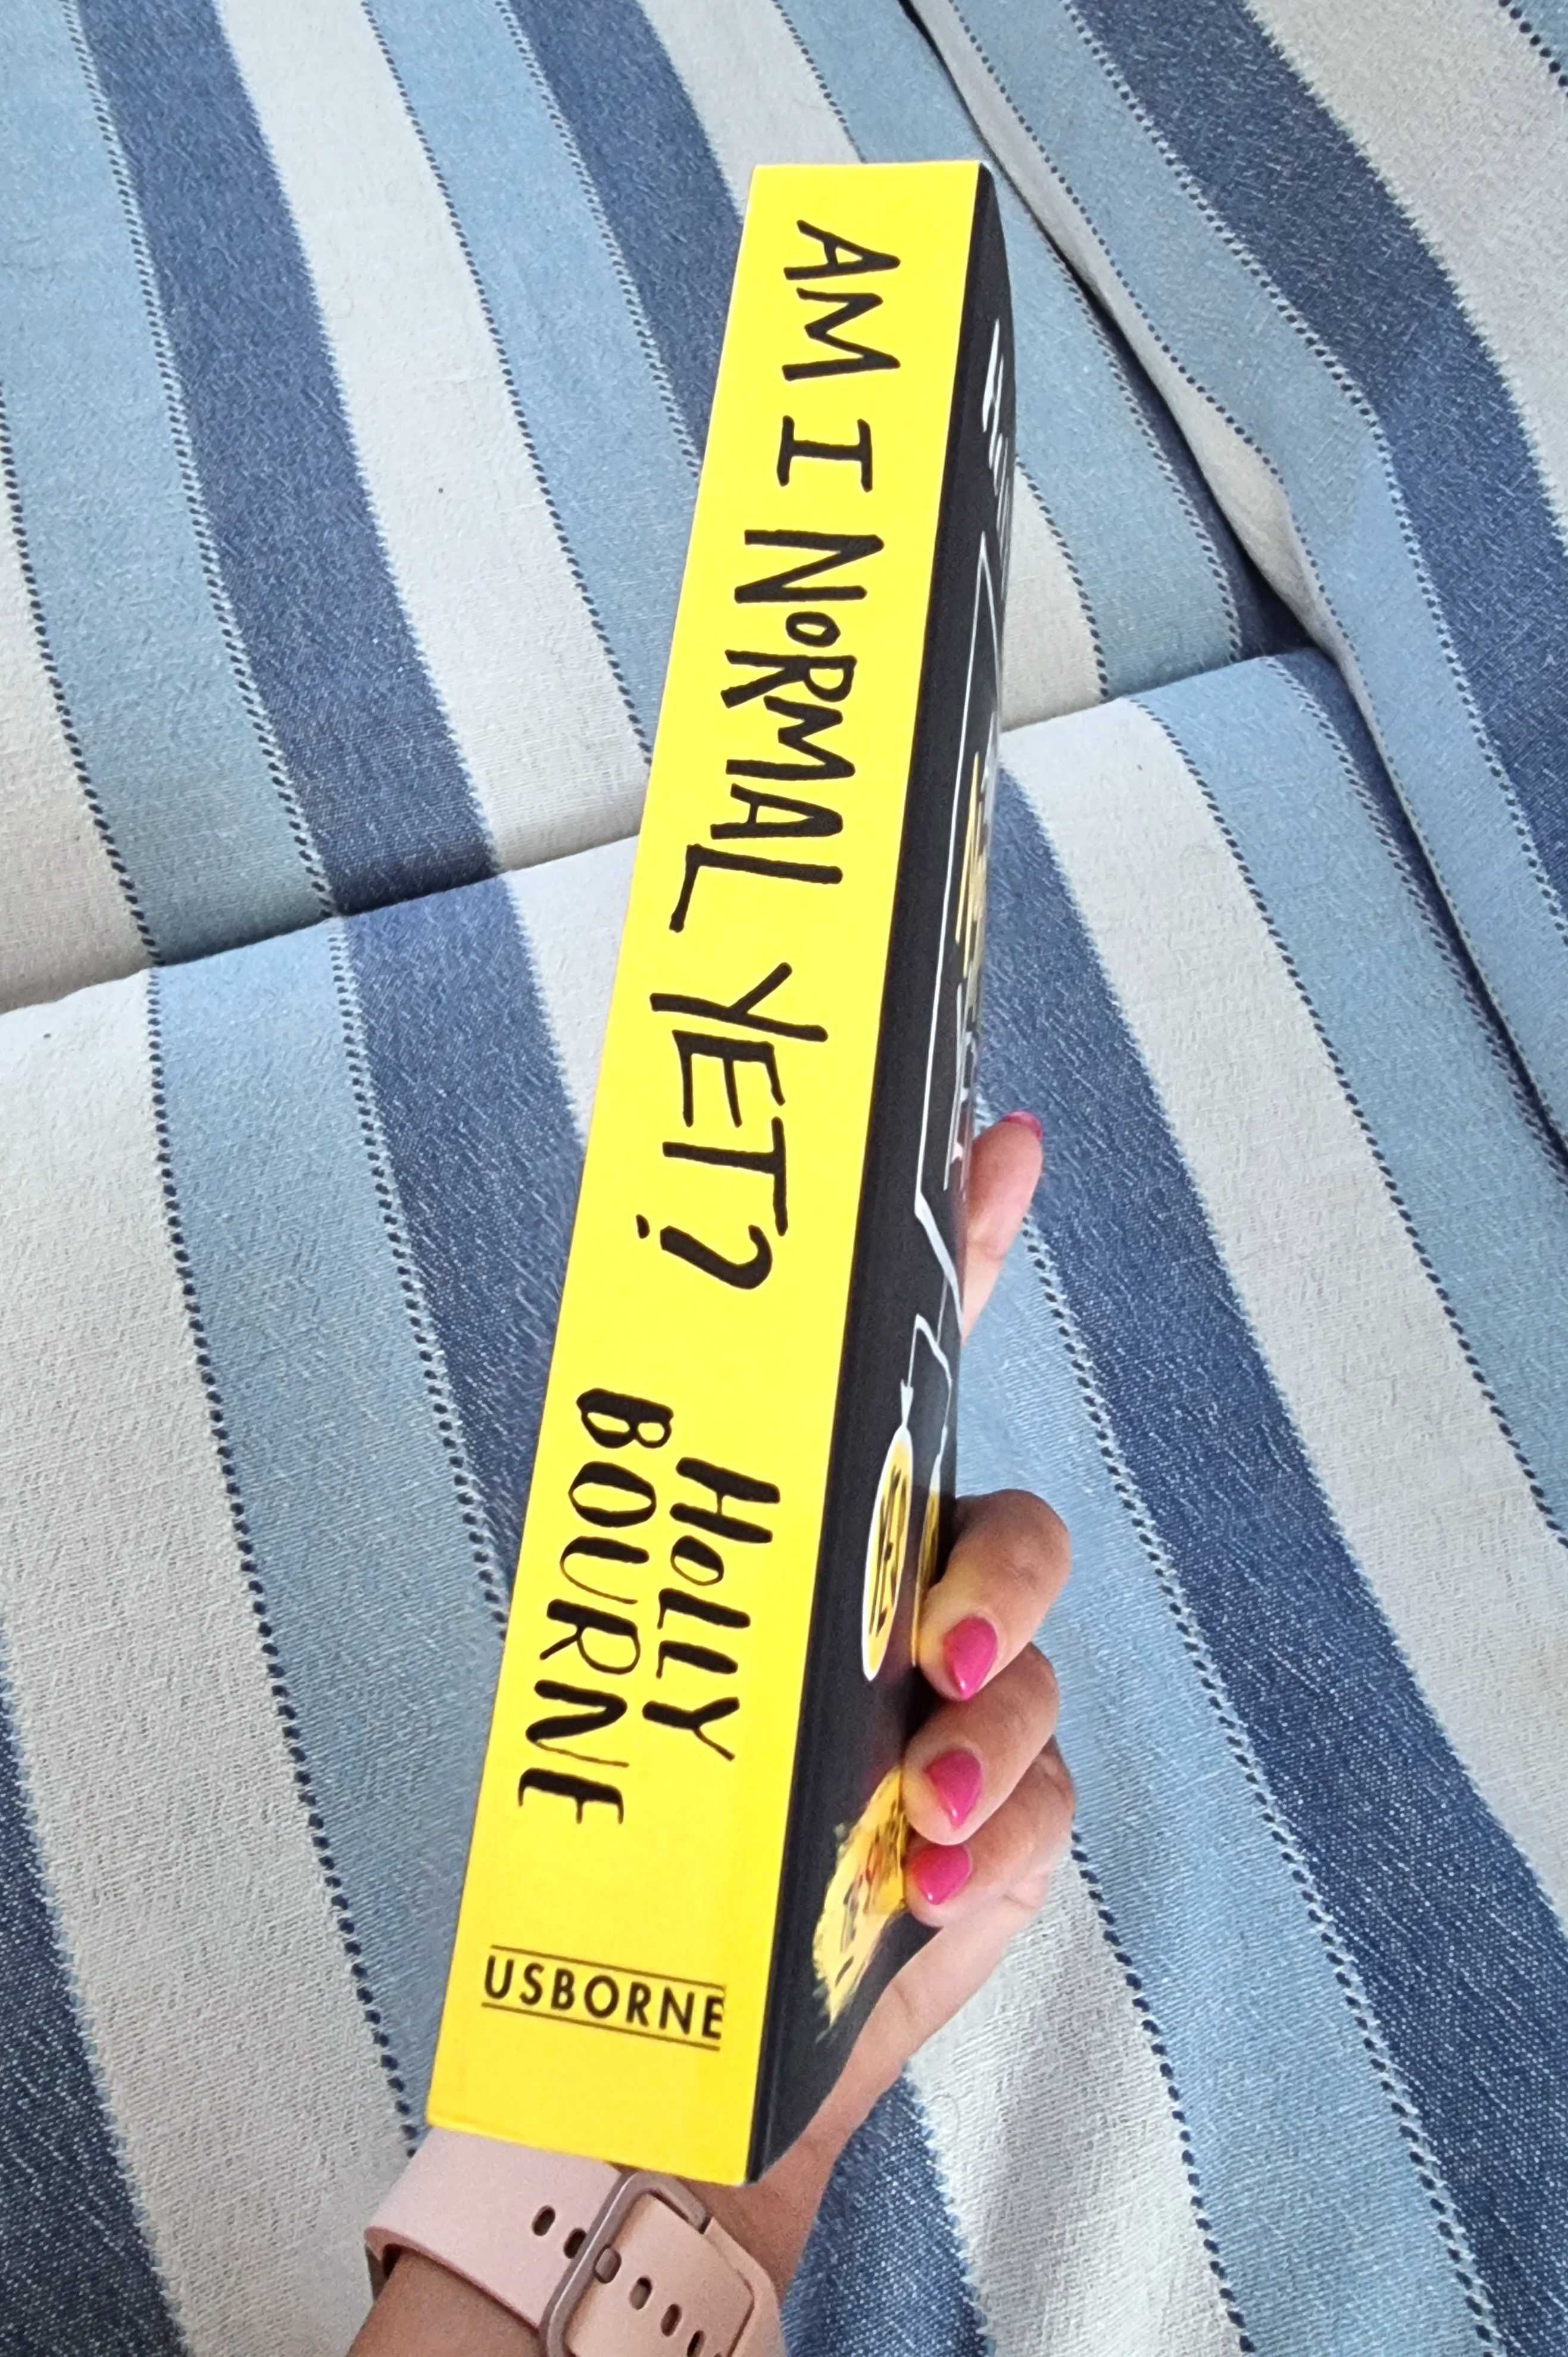 Livro "Am I Normal Yet?" de Holly Bourne (em Inglês)